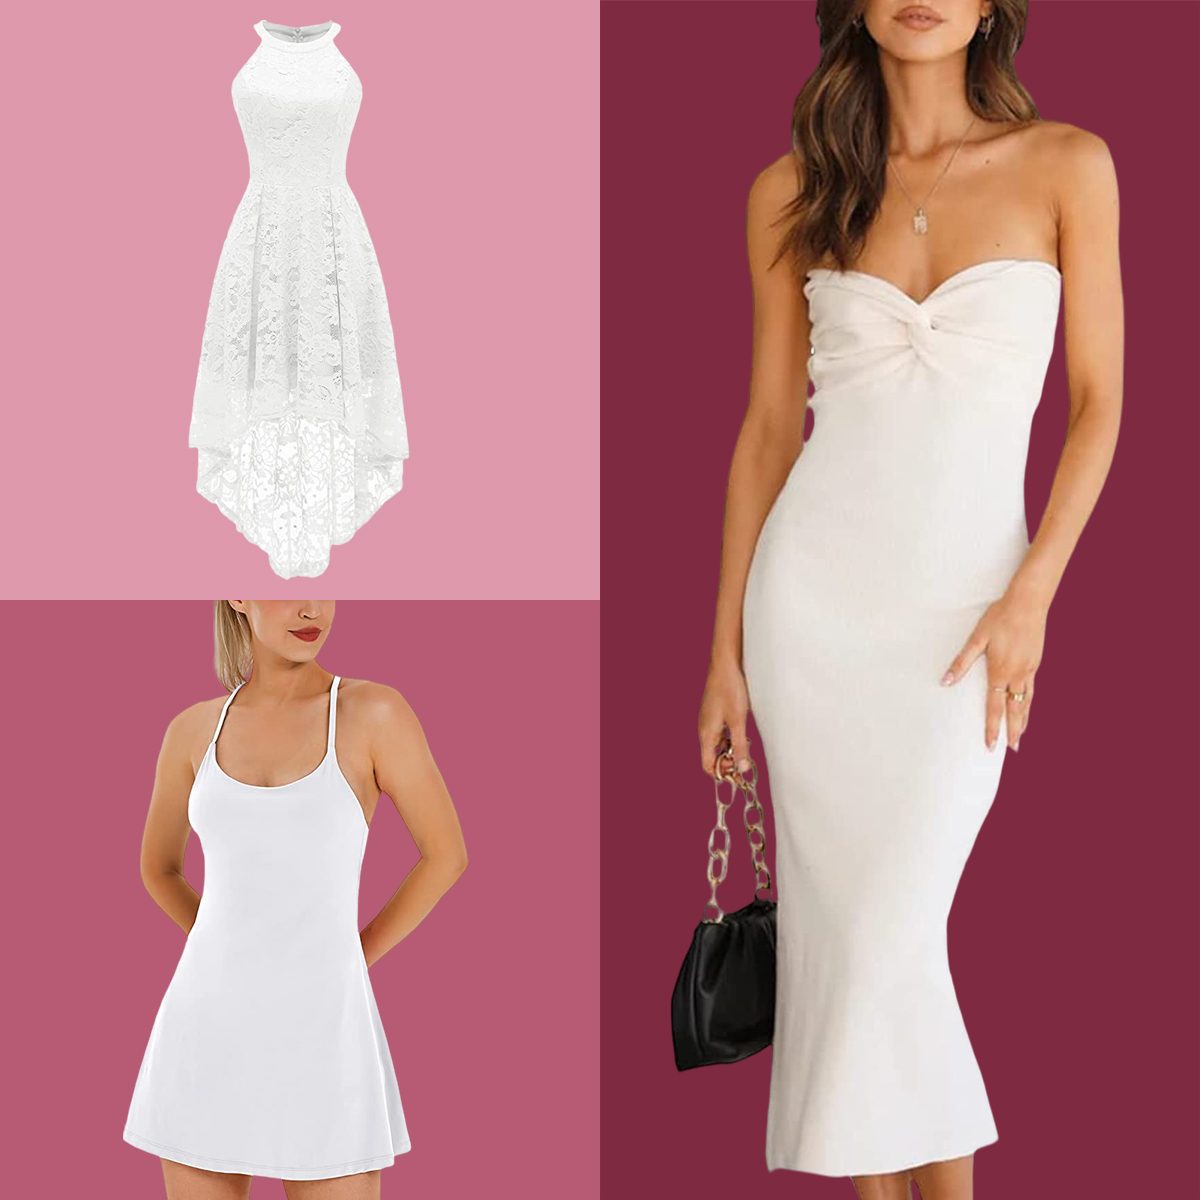 White Formal Dresses Amazon Factory Sale | bellvalefarms.com